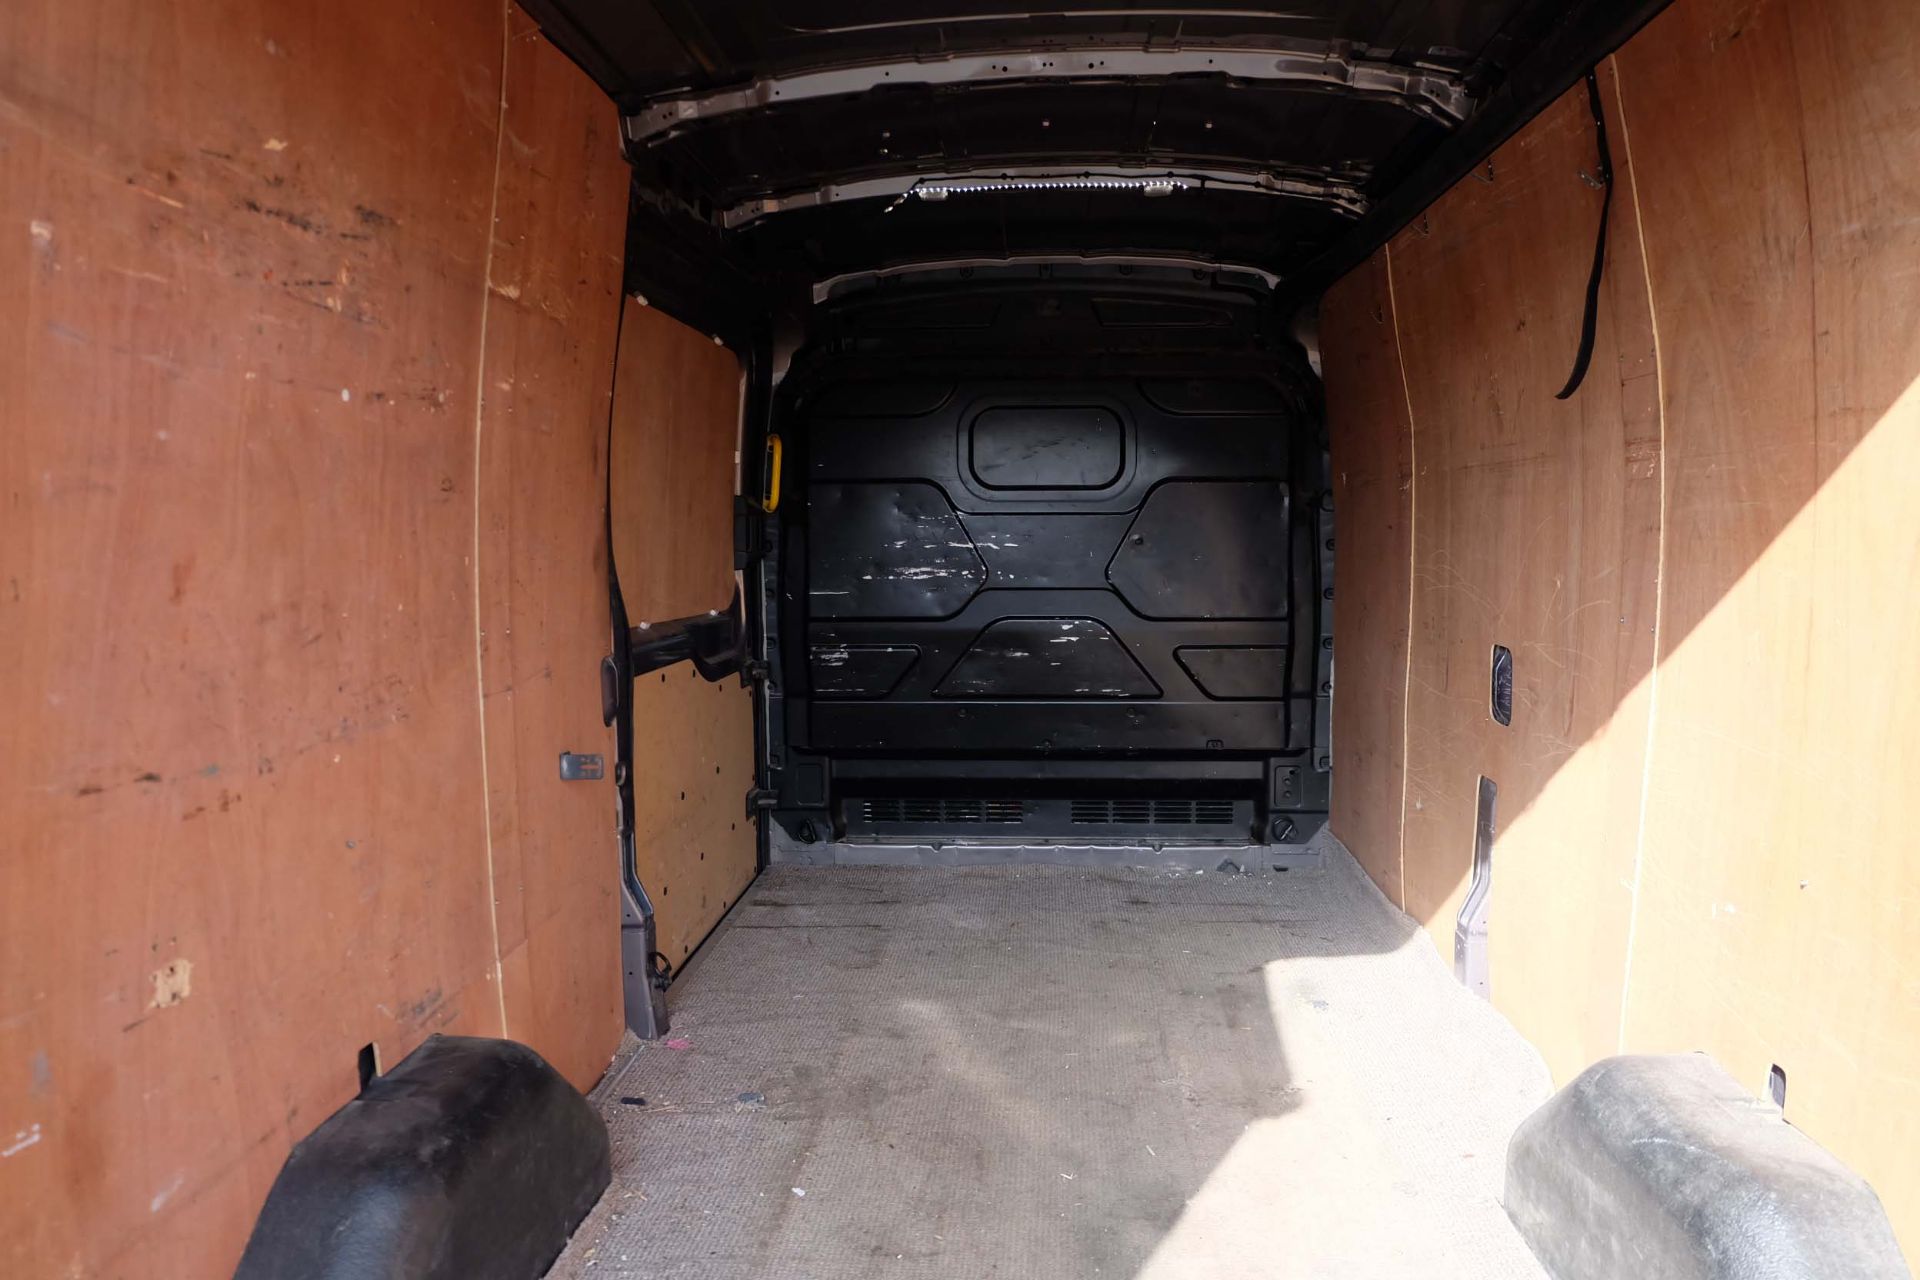 2014 Ford Transit 2.2TDCi Panel Van. 5 Door. Diesel. Manual. RWD. 125 PS. - Image 8 of 17